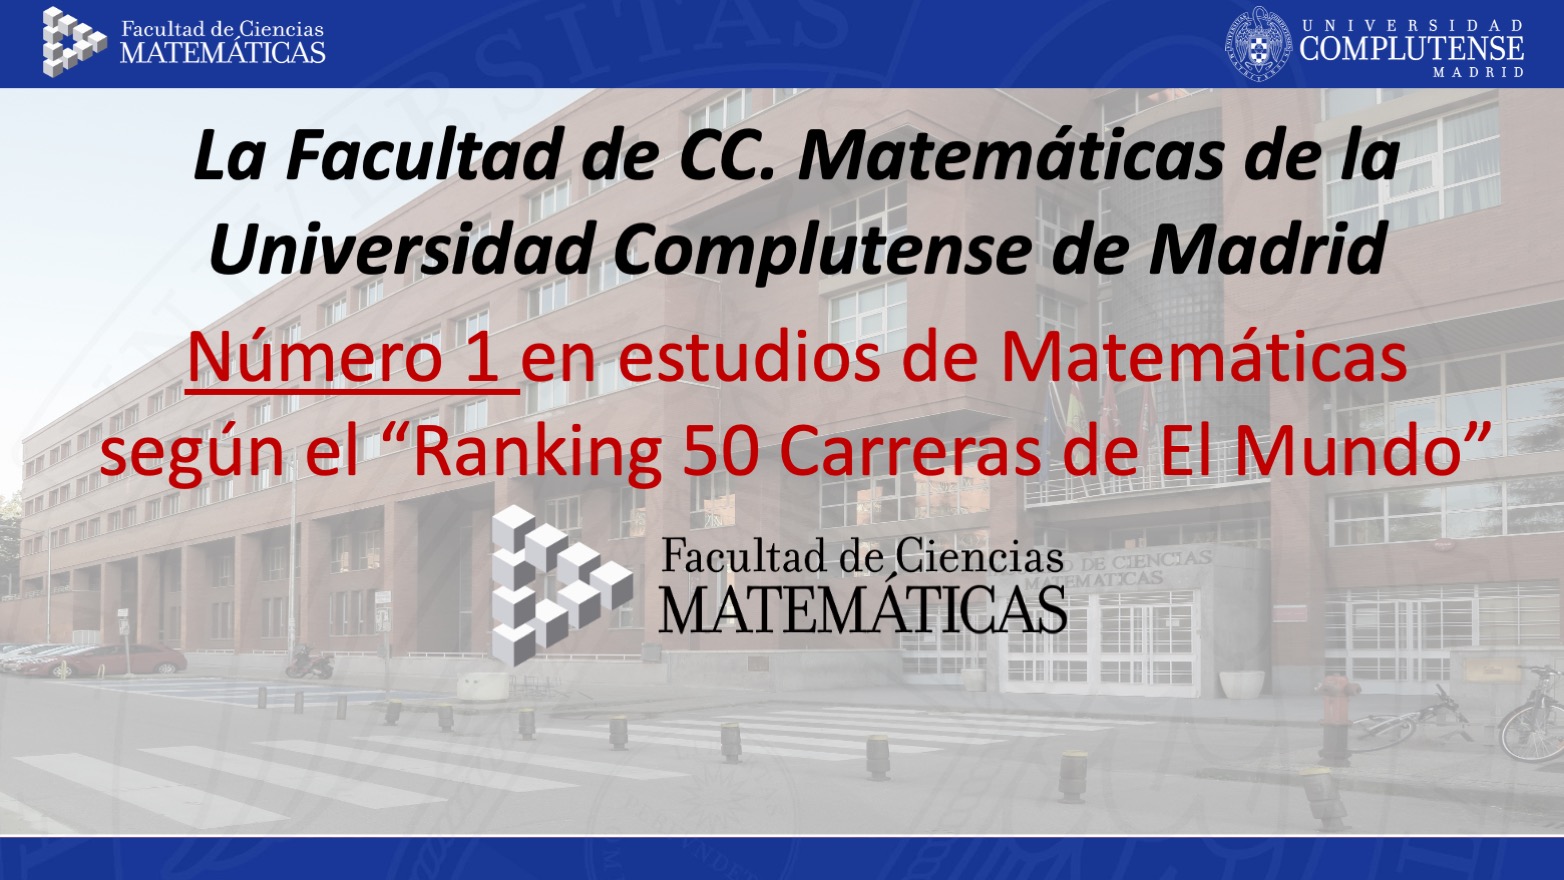 La Facultad de Matemáticas de la UCM es el mejor lugar para estudiar matemáticas de España, según el ranking de El Mundo.